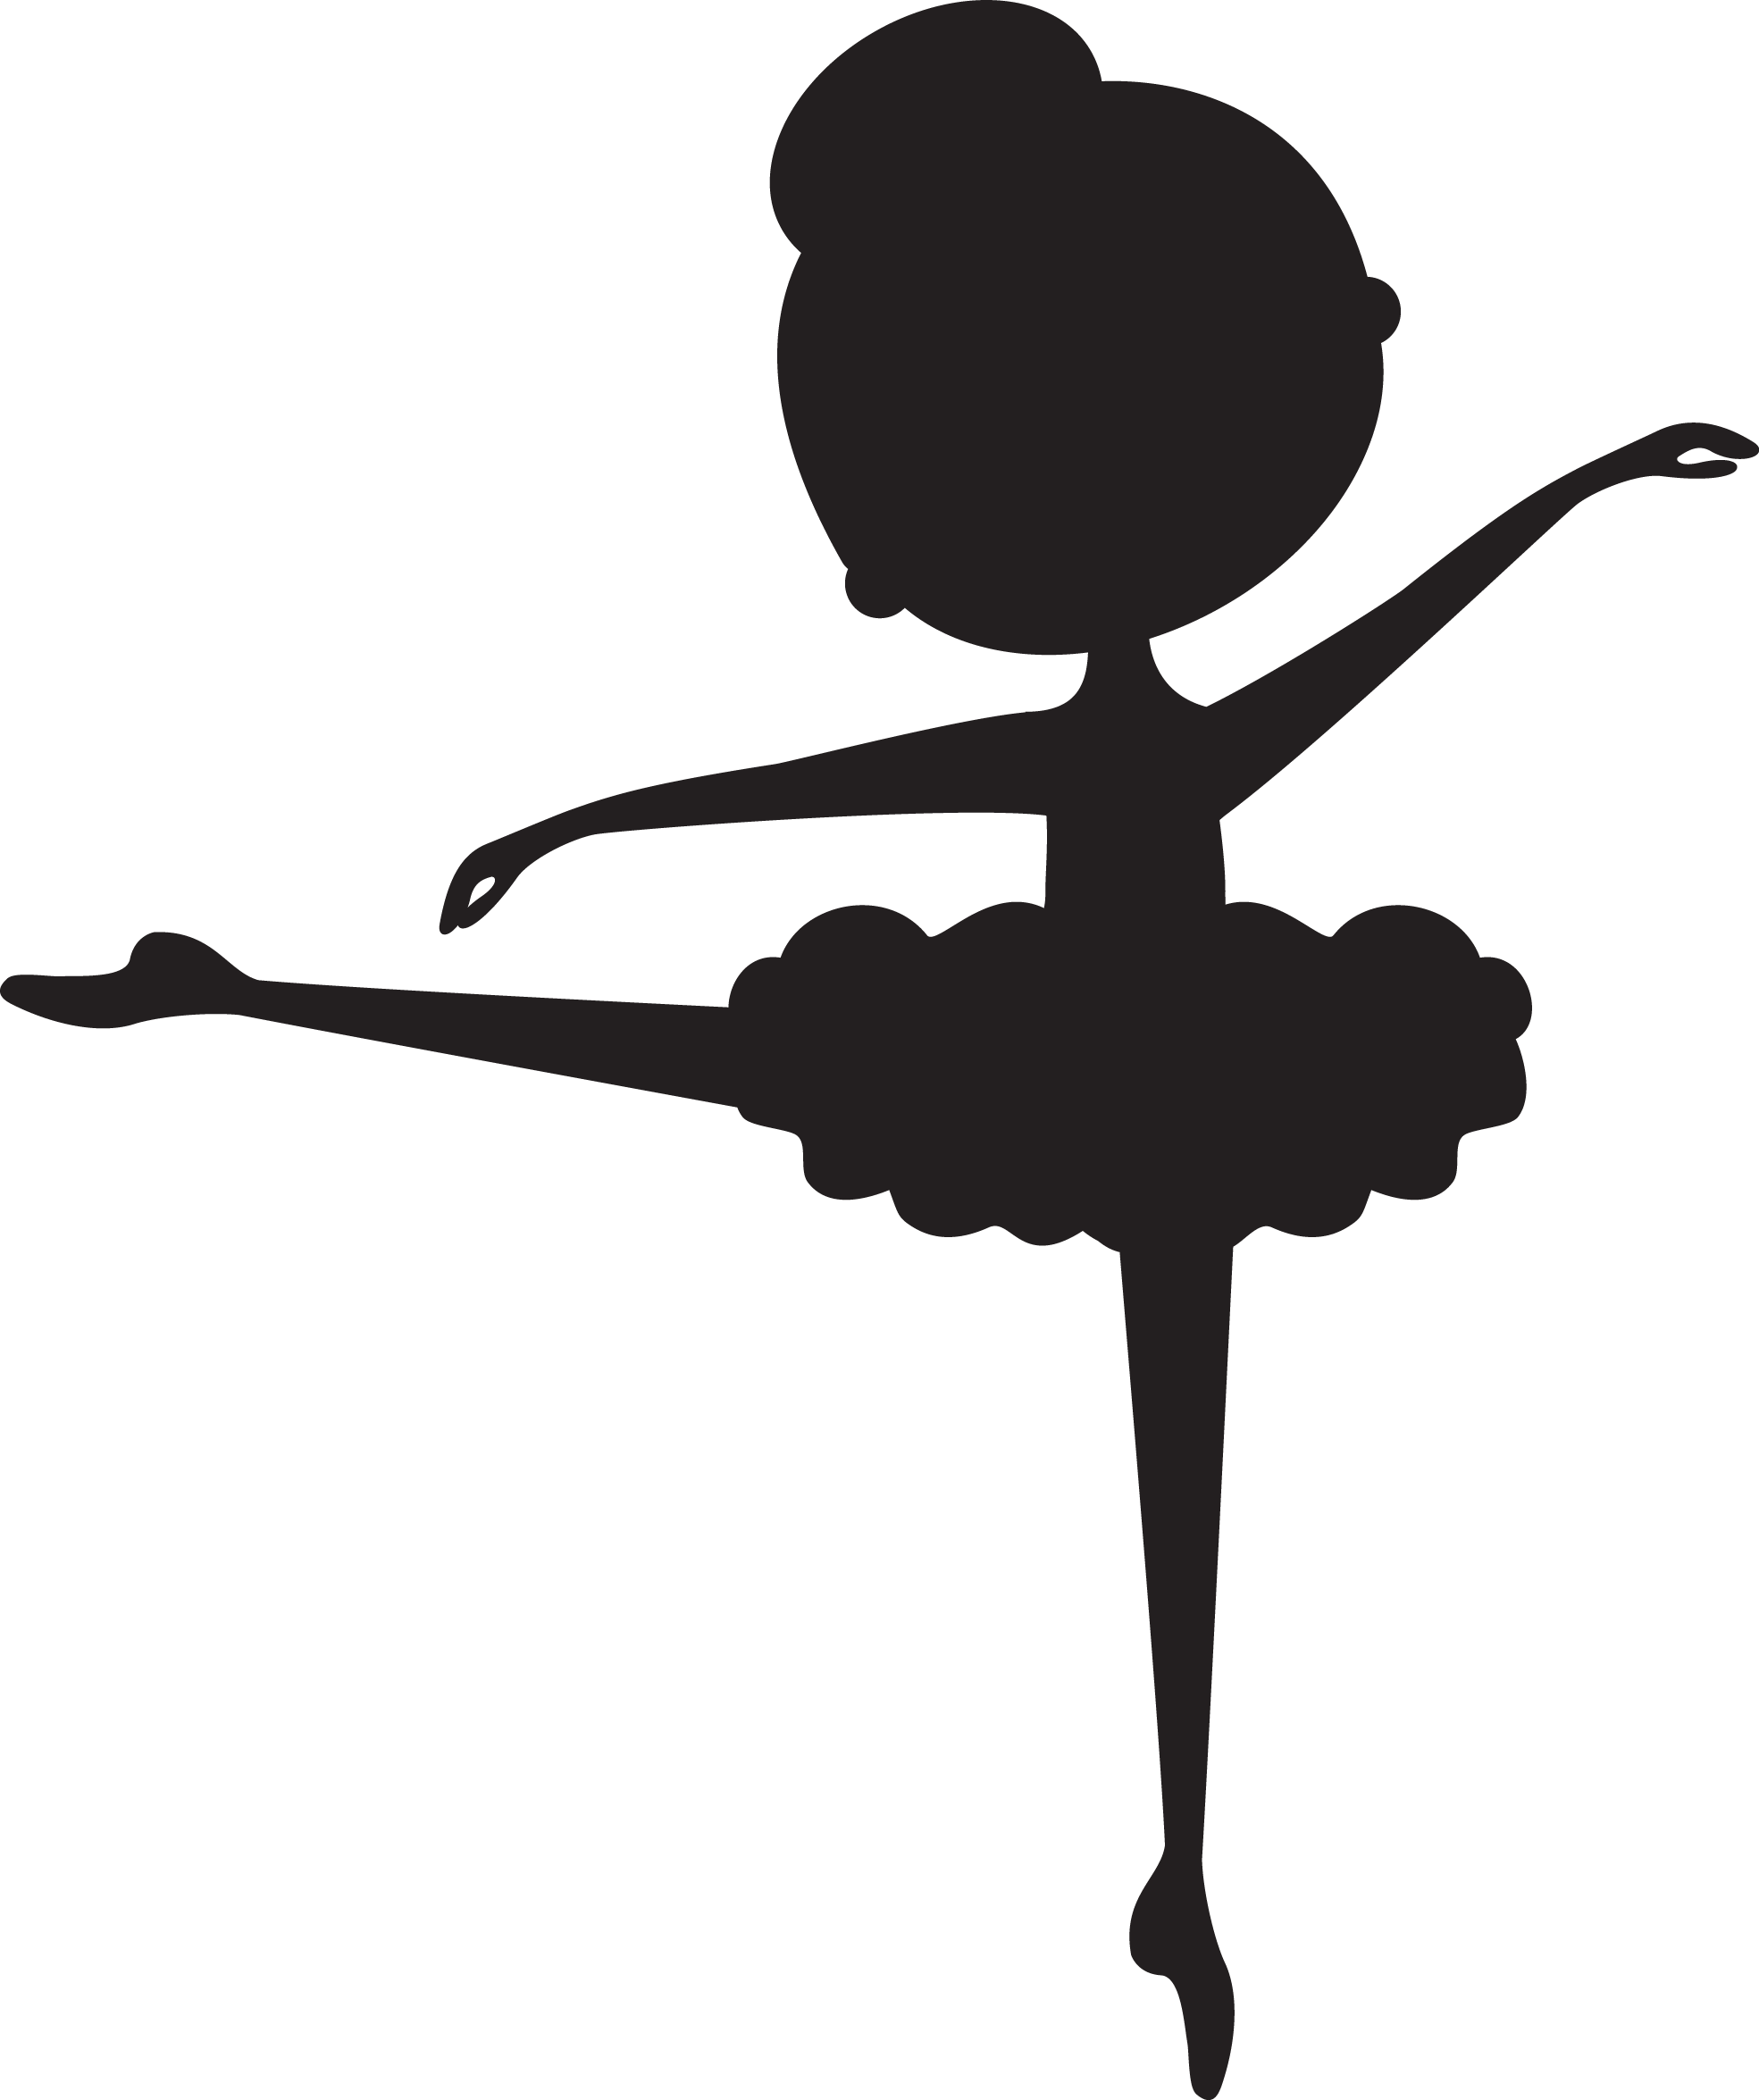 Dancer clipart twist. Child ballerina silhouette at